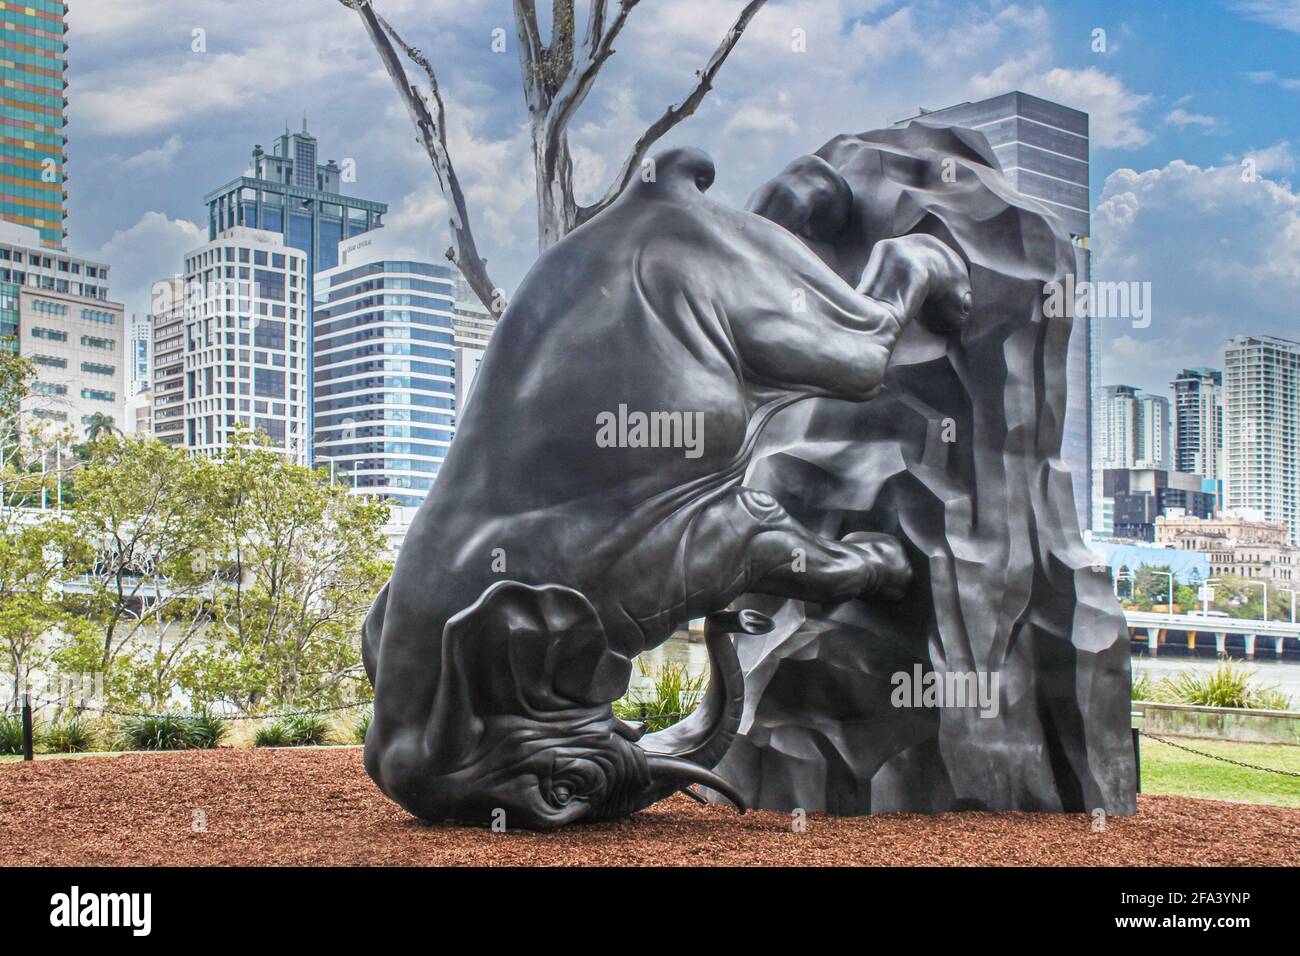 Juli 8 2017 Brisbane Australien kopfüber Elefant - die Welt dreht sich - Statue am Fluss im zentralen Geschäftsviertel mit Städtische Skyline im Hintergrund Stockfoto